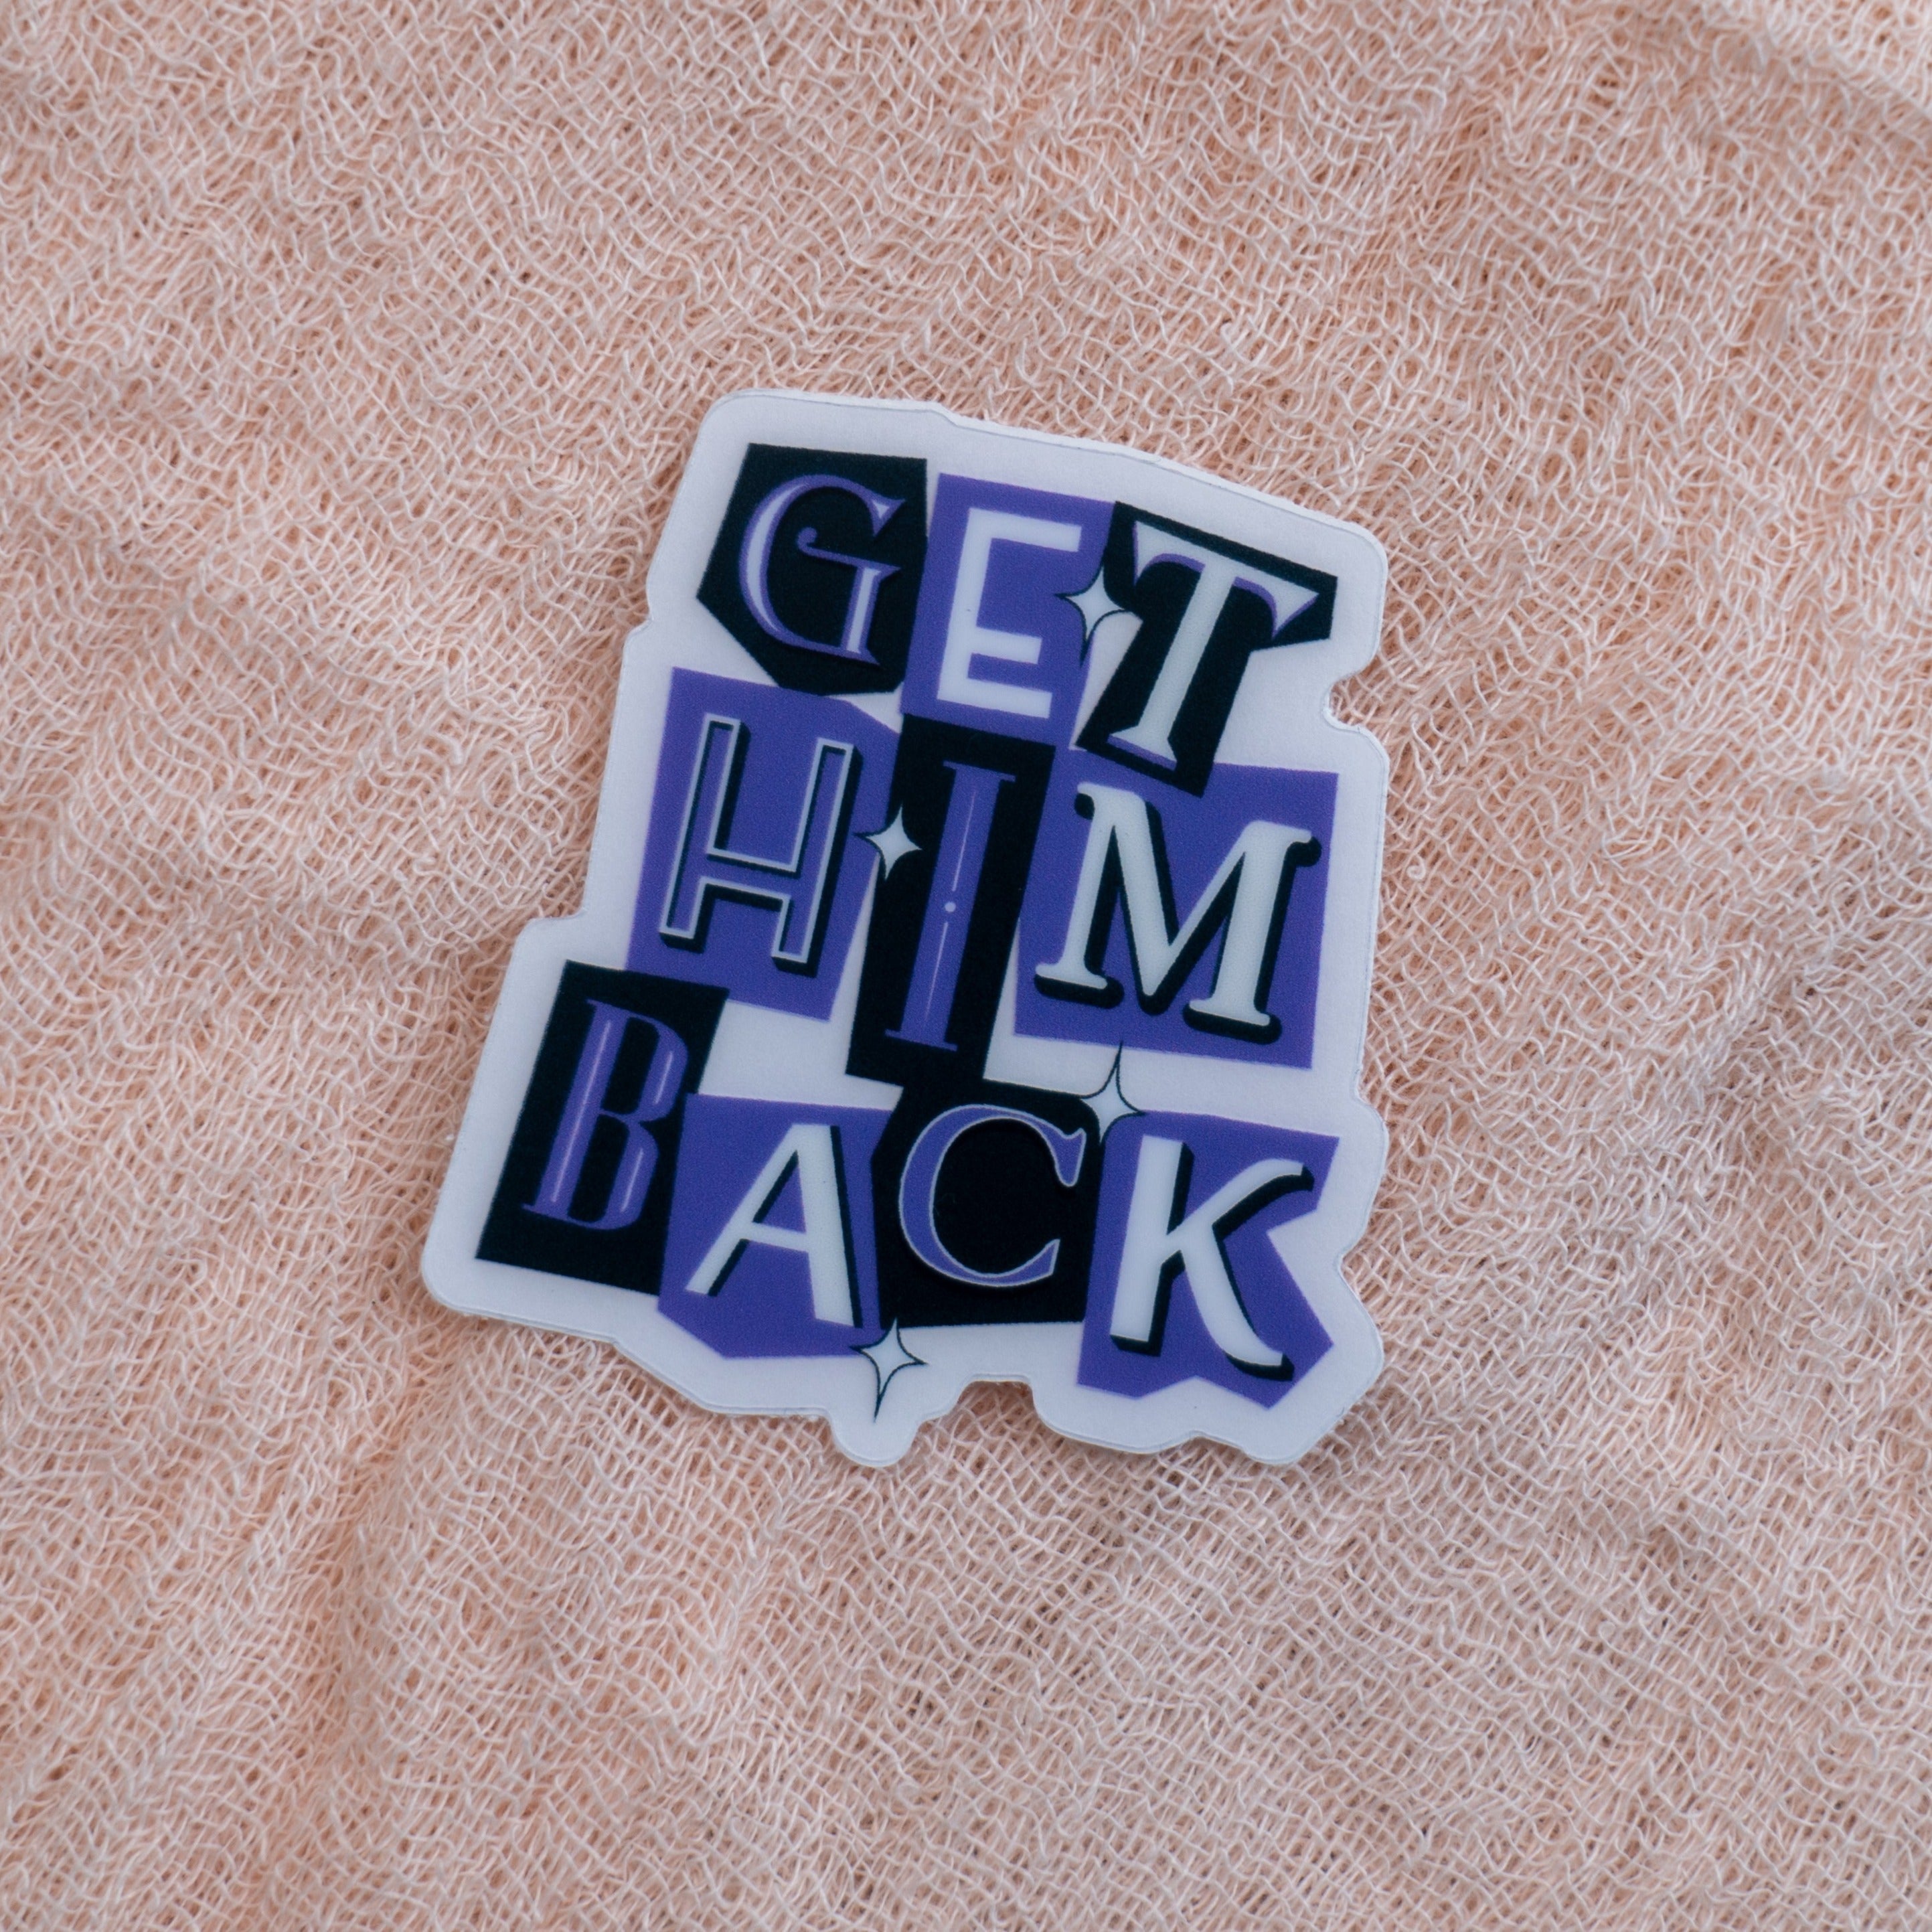 Get Him Back Sticker - Emacity Threads